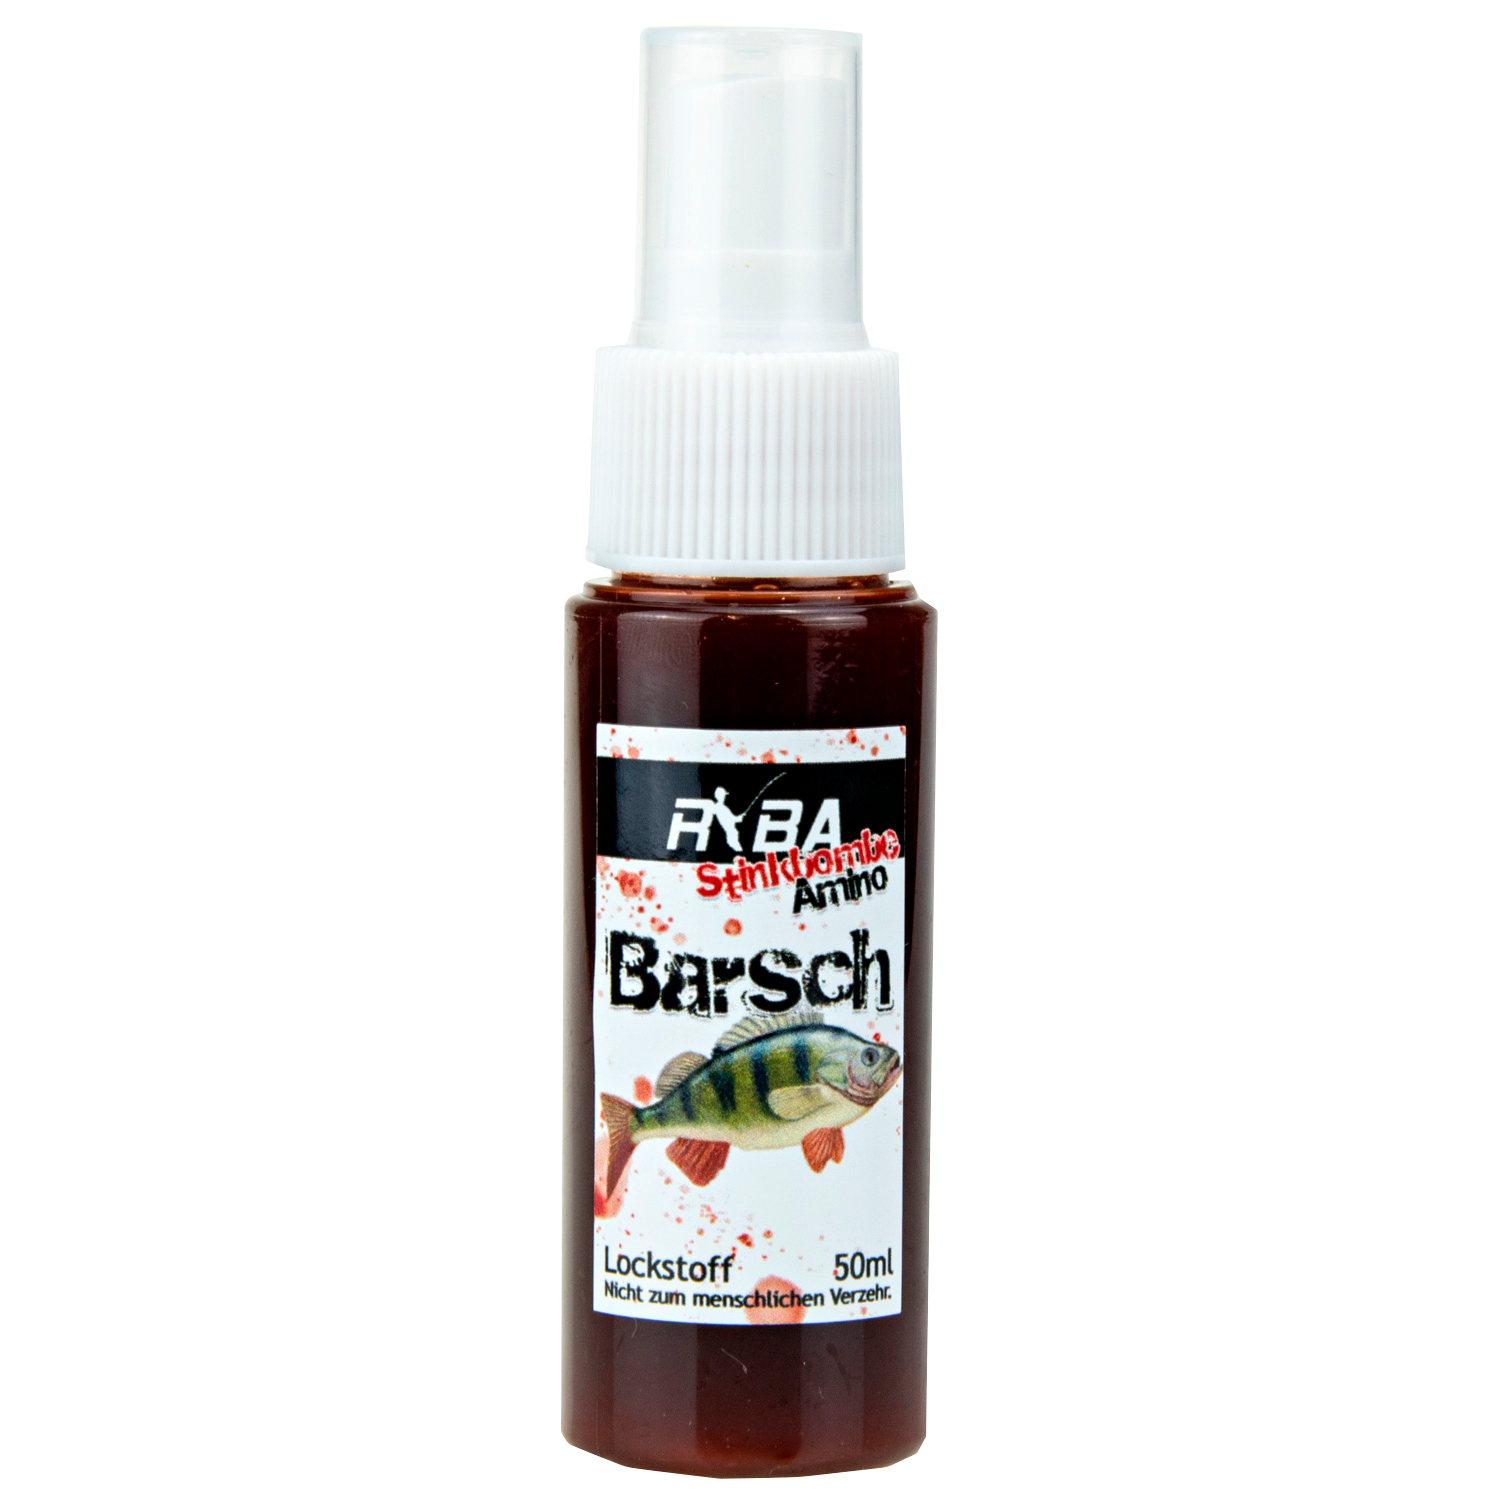 Ryba Attractant Spray Amino Stink Bomb (perch) 